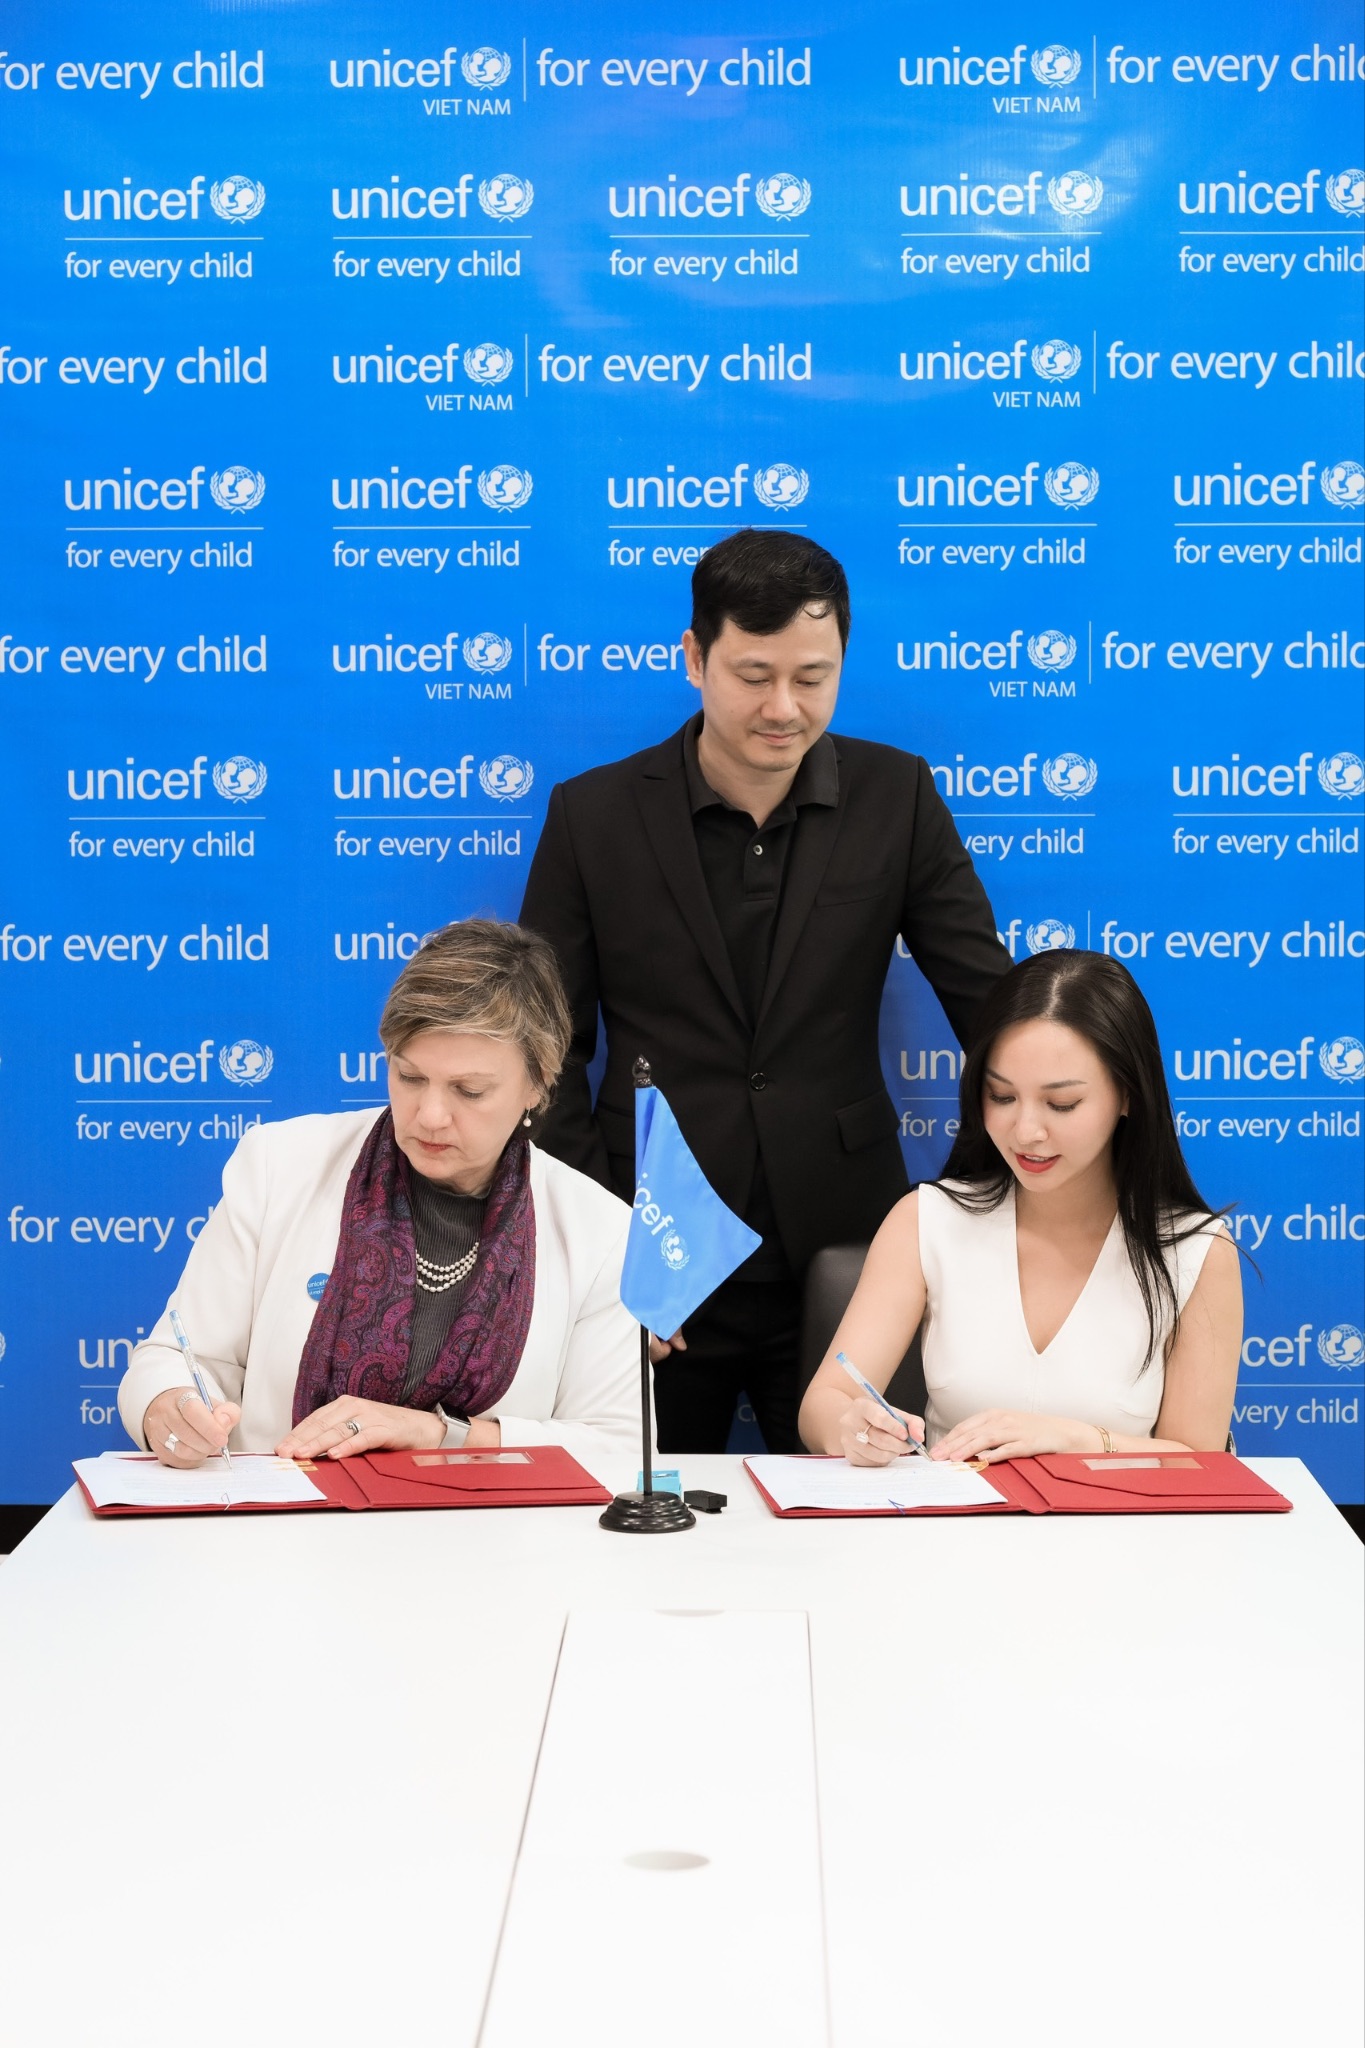 Nữ CEO vừa gia nhập Hội đồng Nhà tài trợ toàn cầu của UNICEF đúng sinh nhật: Chuyển khoản trước 10 tỷ đồng, cam kết quyên góp 1 triệu USD- Ảnh 1.